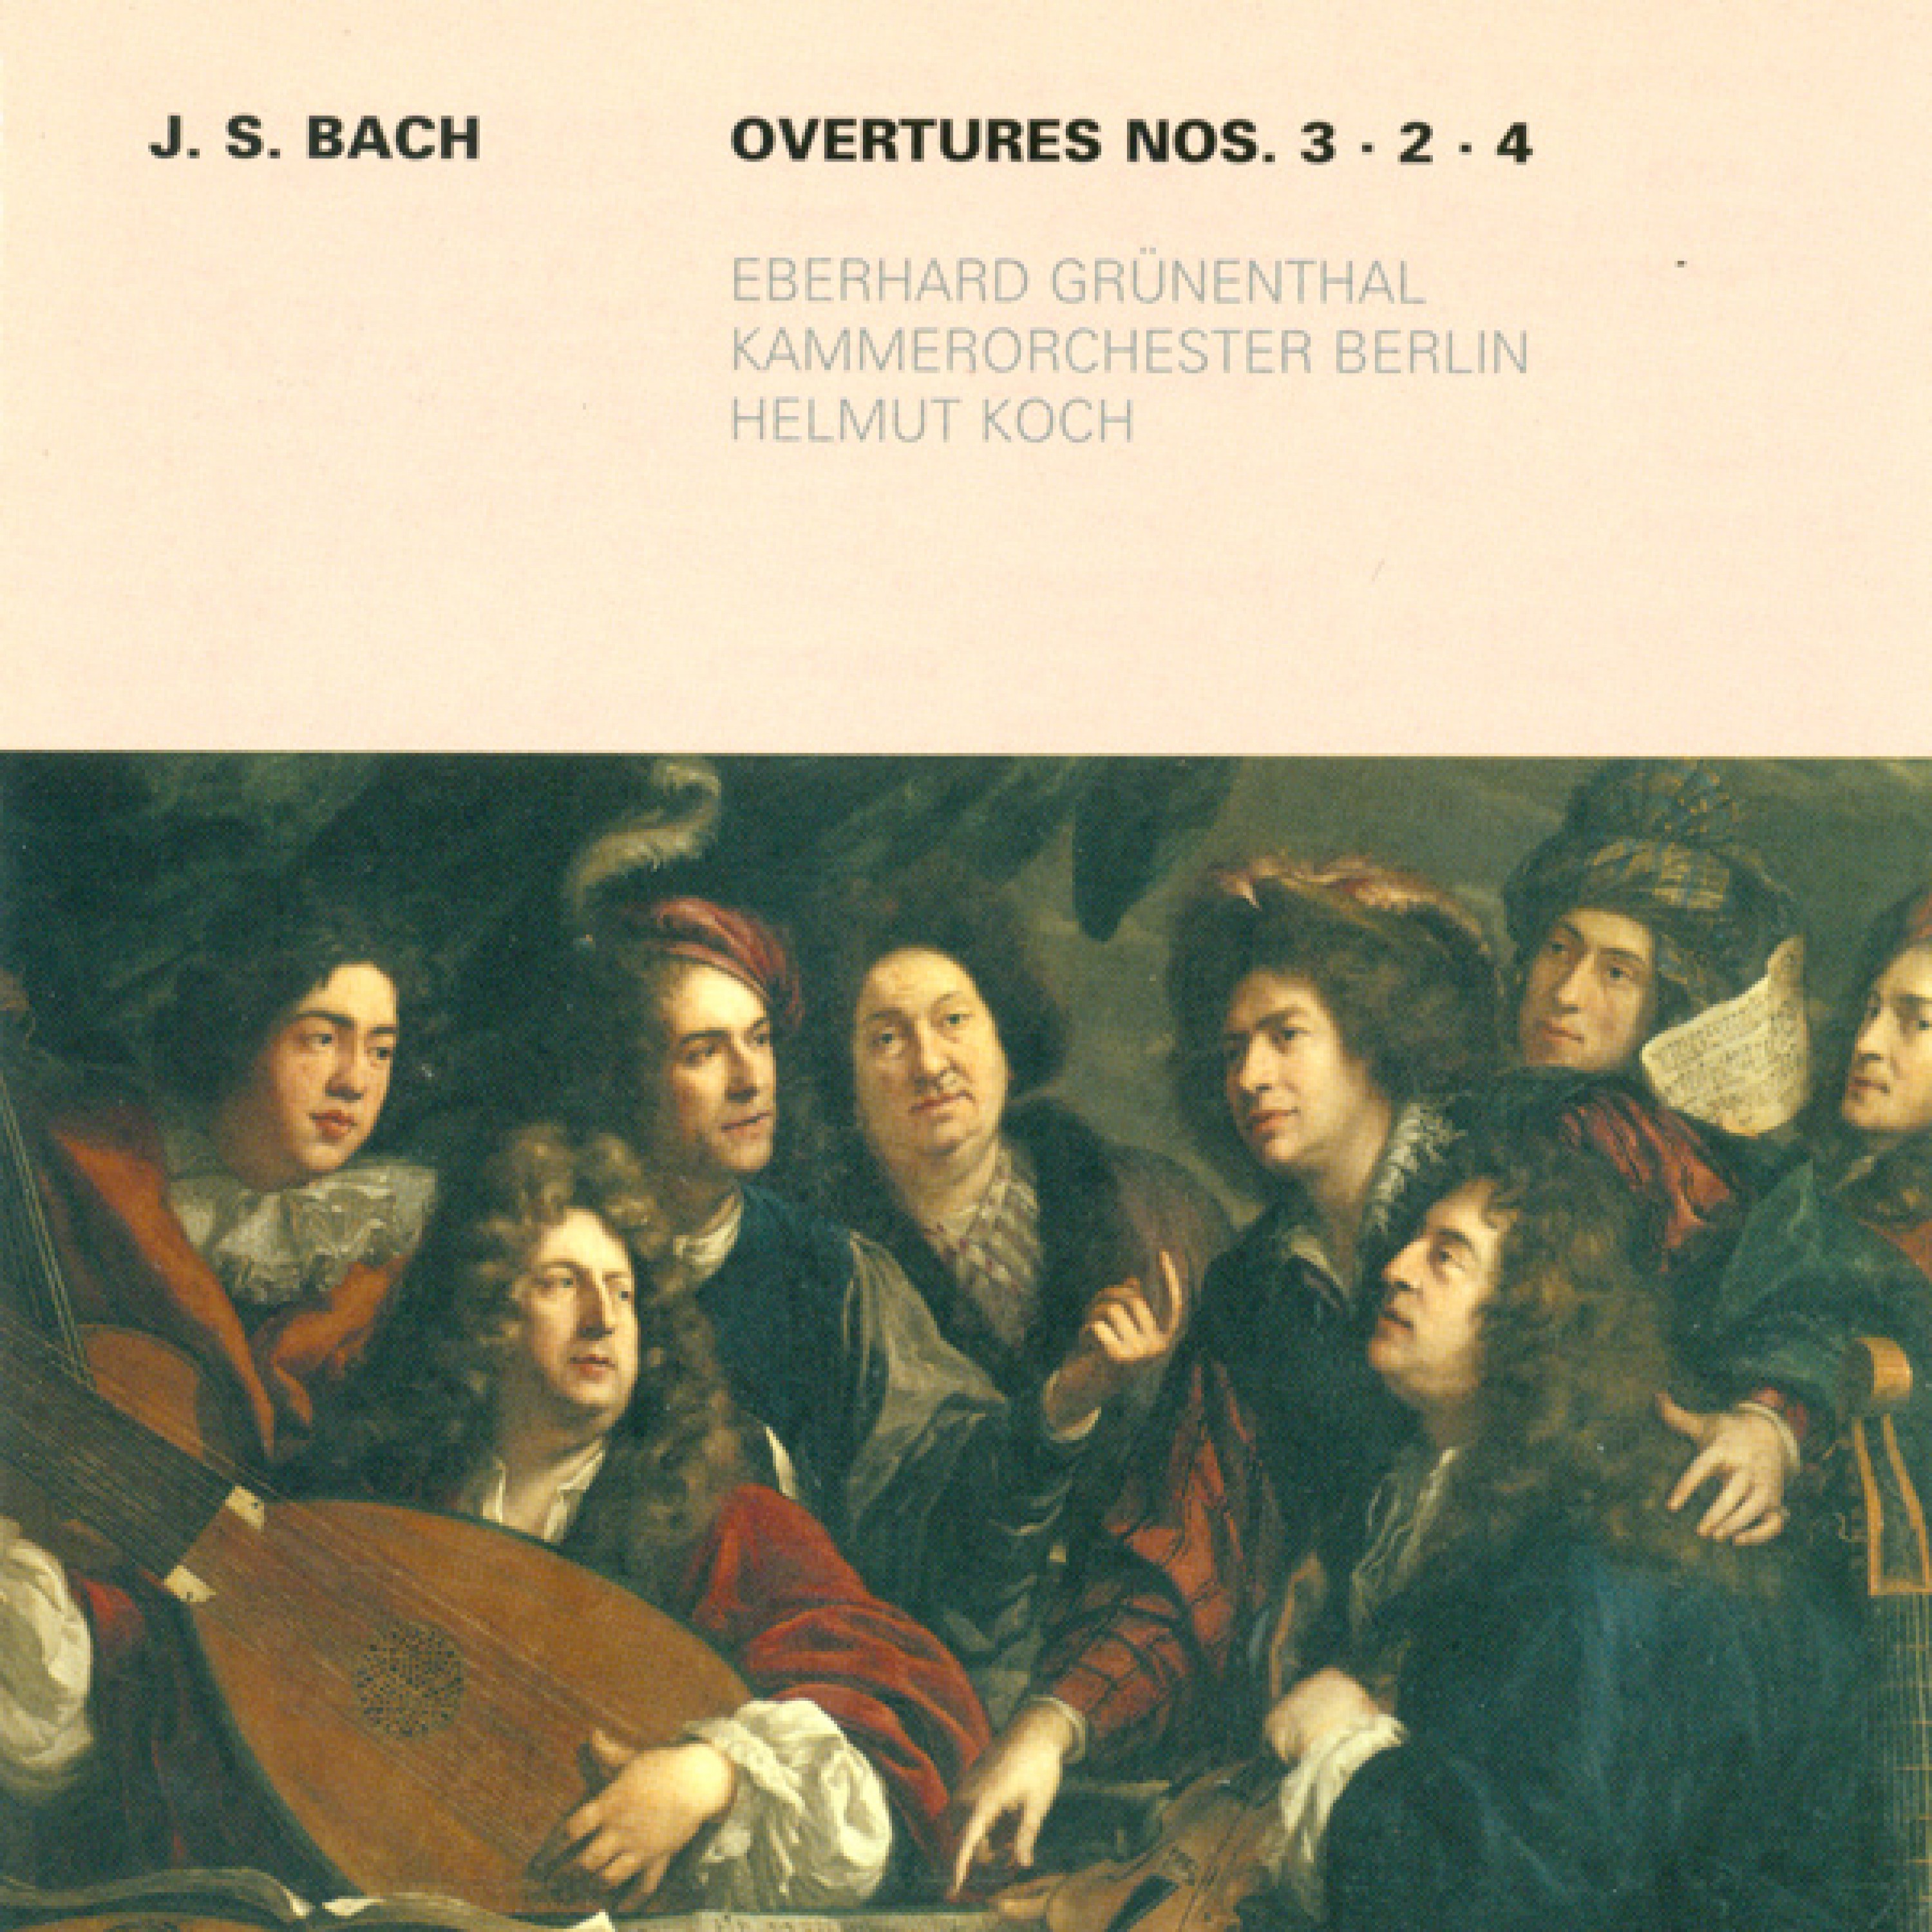 Overture (Suite) No. 4 in D major, BWV 1069: III. Gavotte